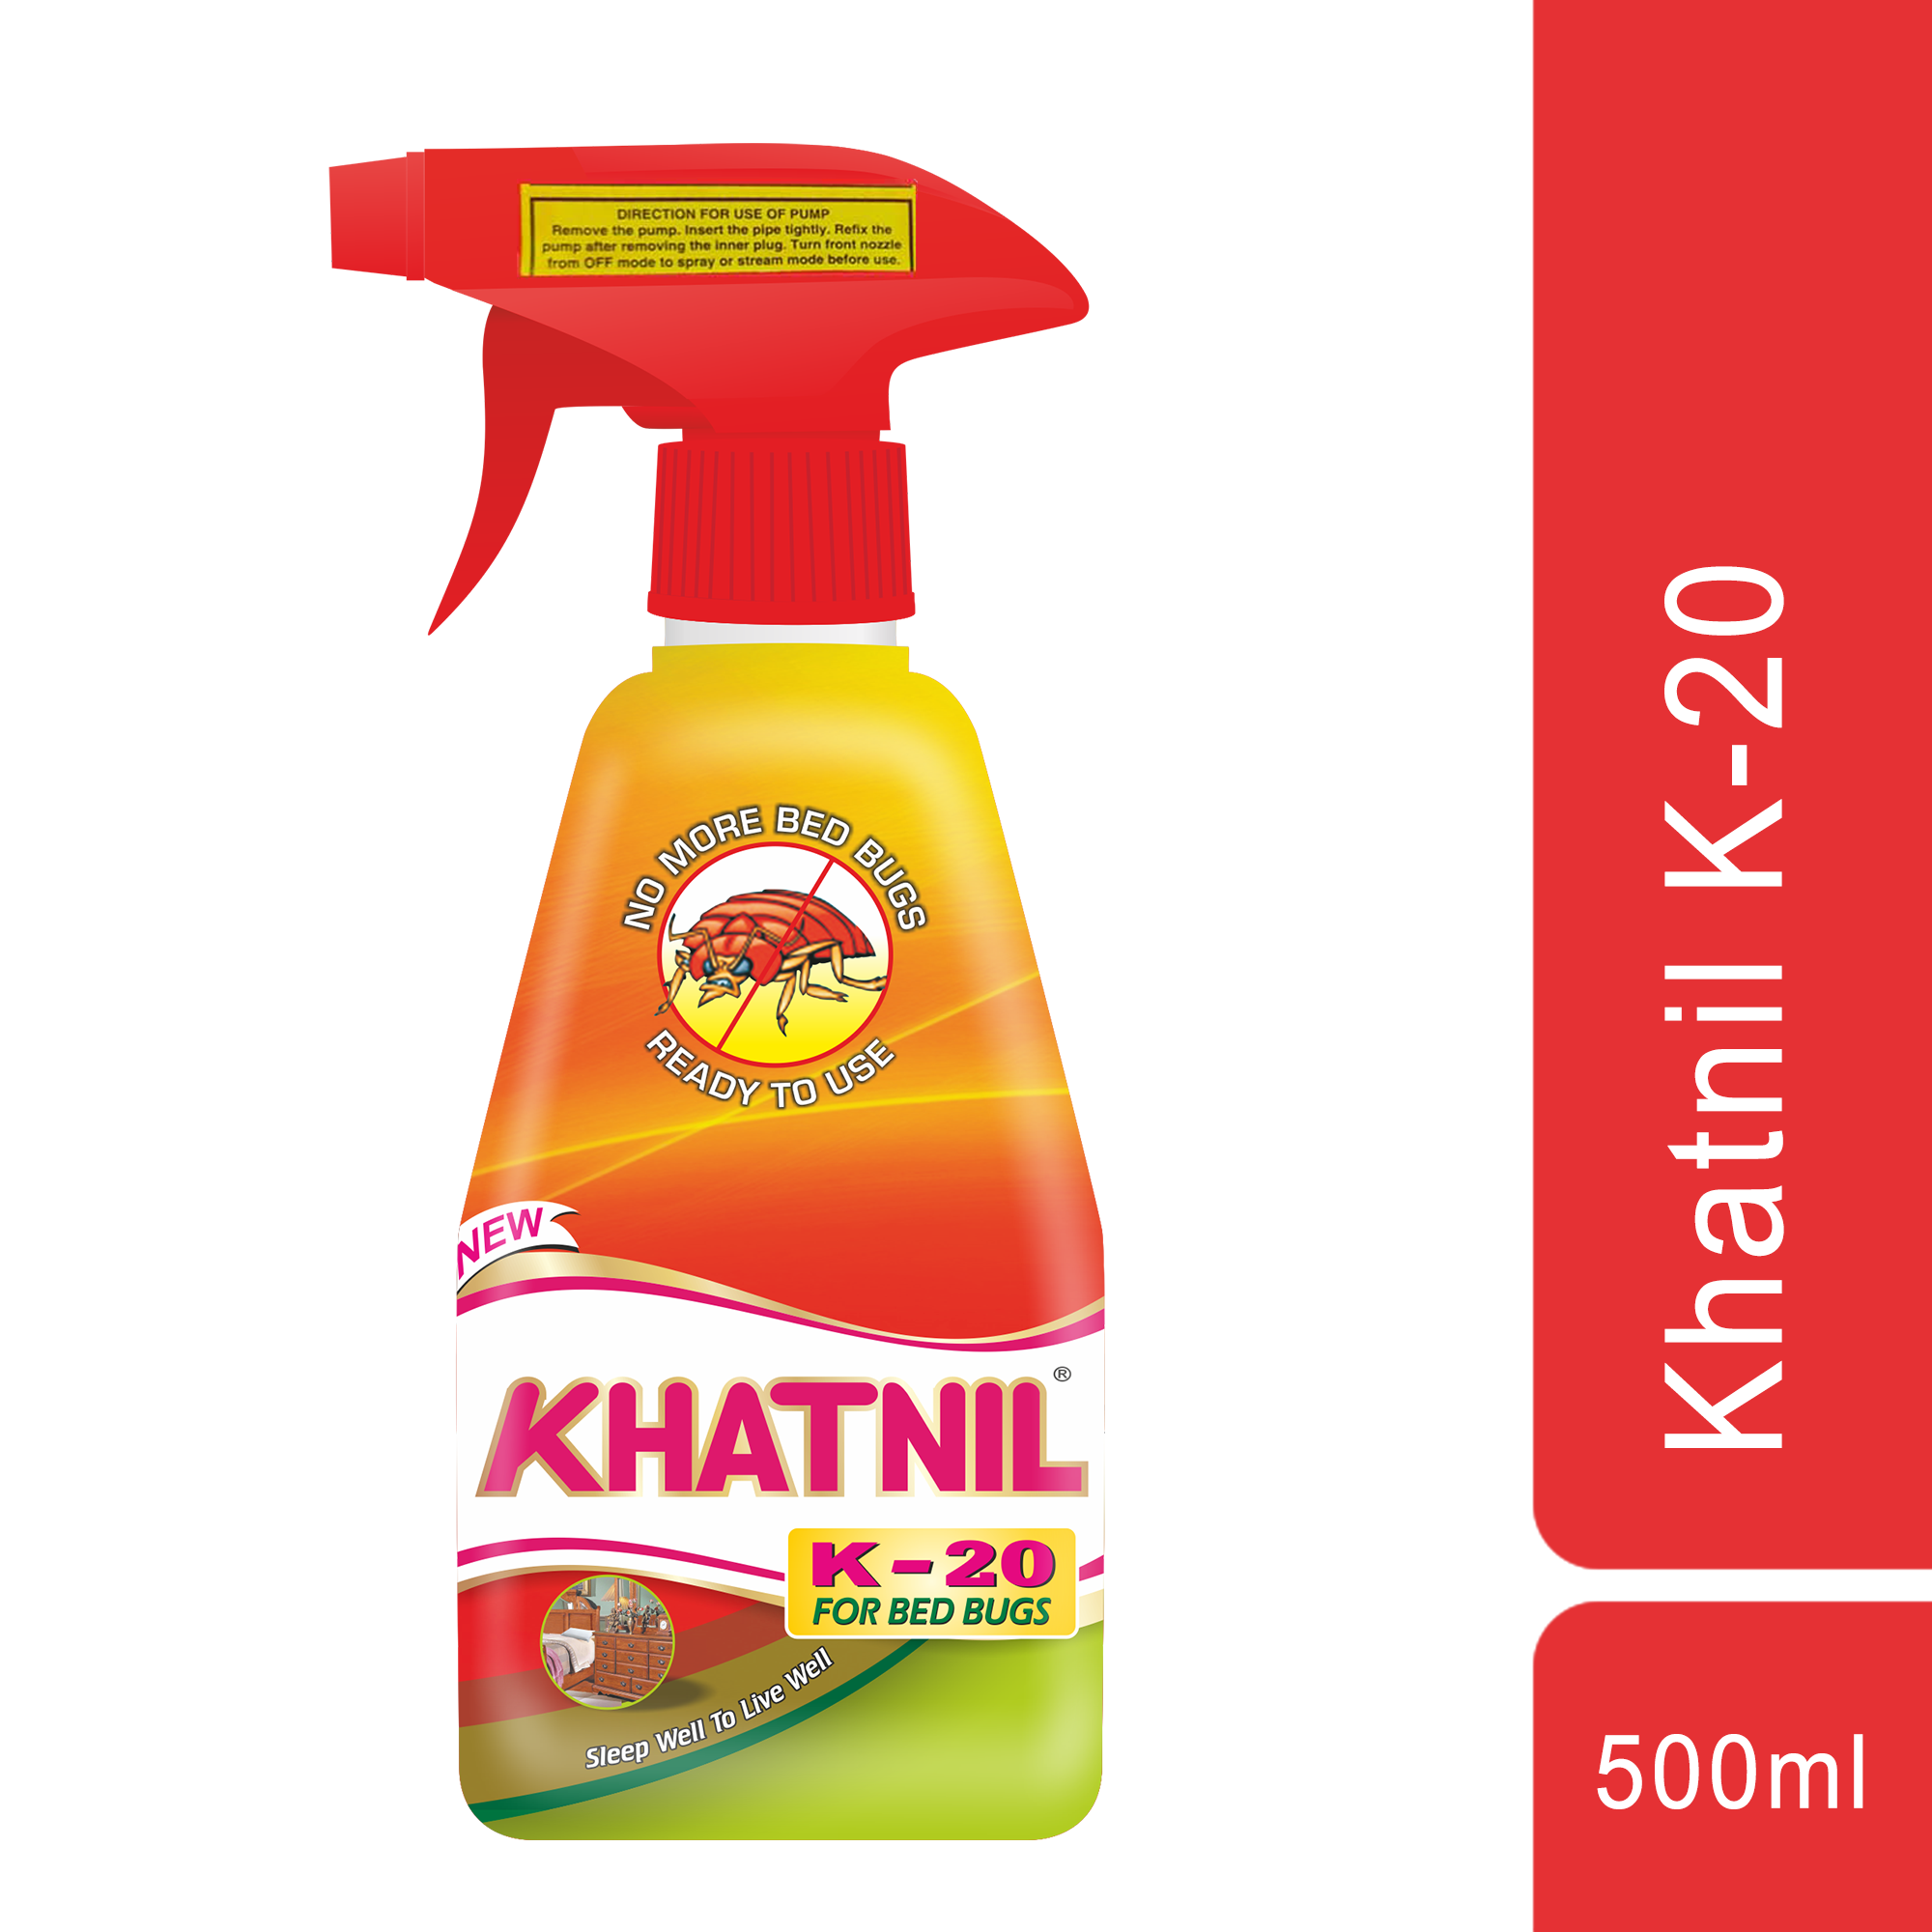 Khatnil K-20 For Bed Bugs 500ml